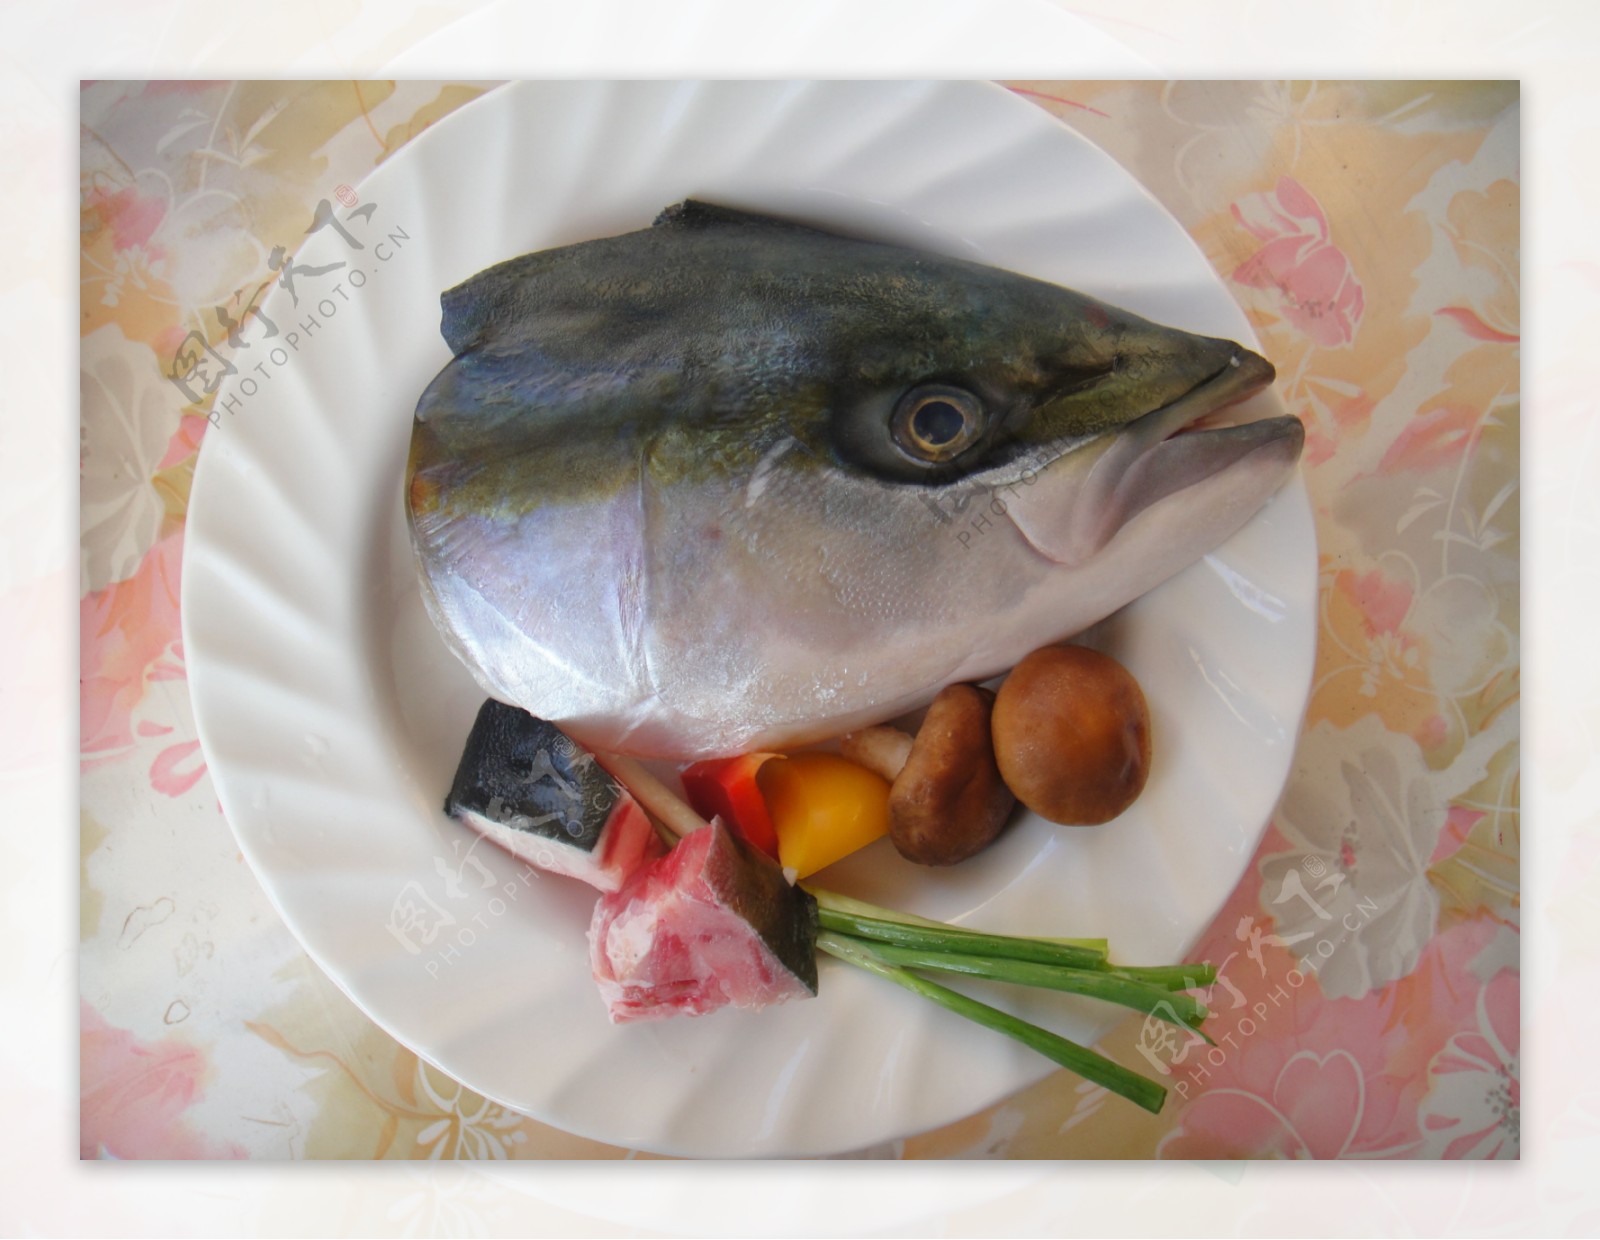 青魽鱼料理食材